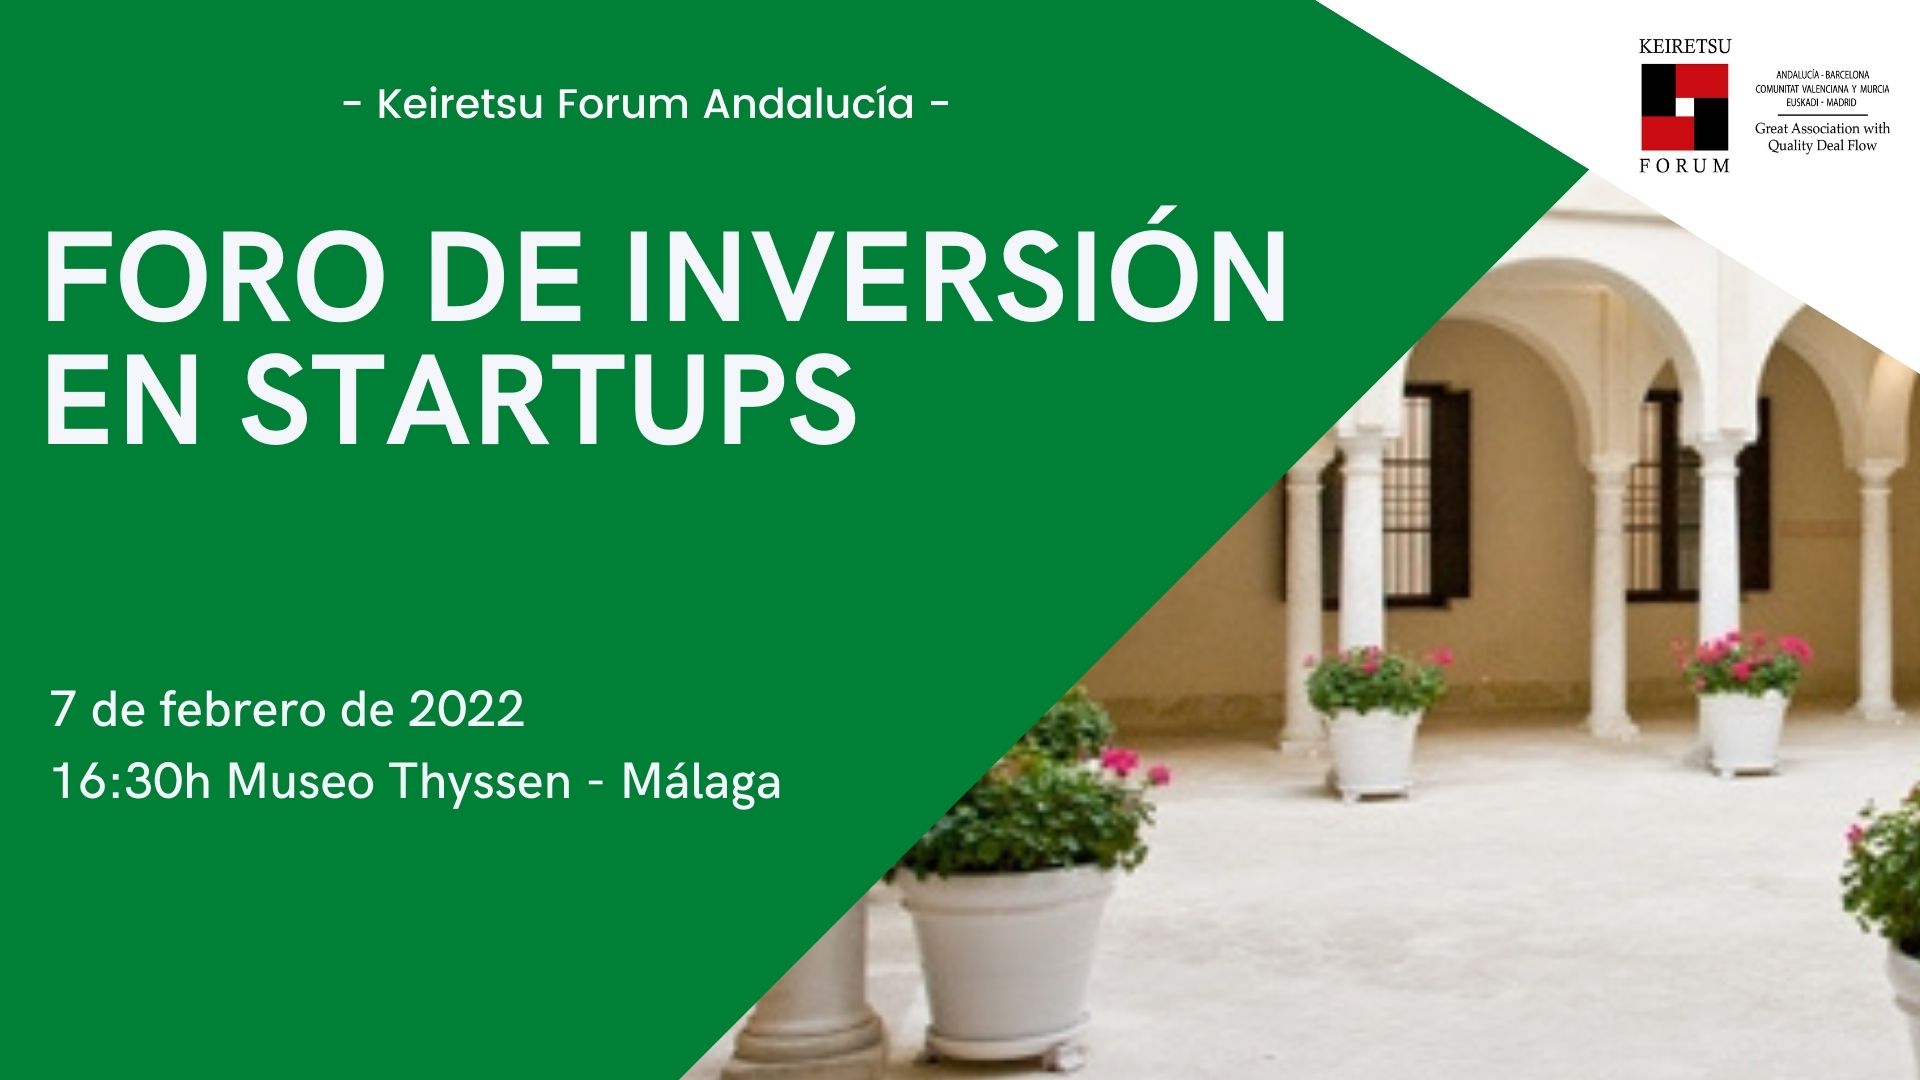 Foro de inversión startups Andalucía